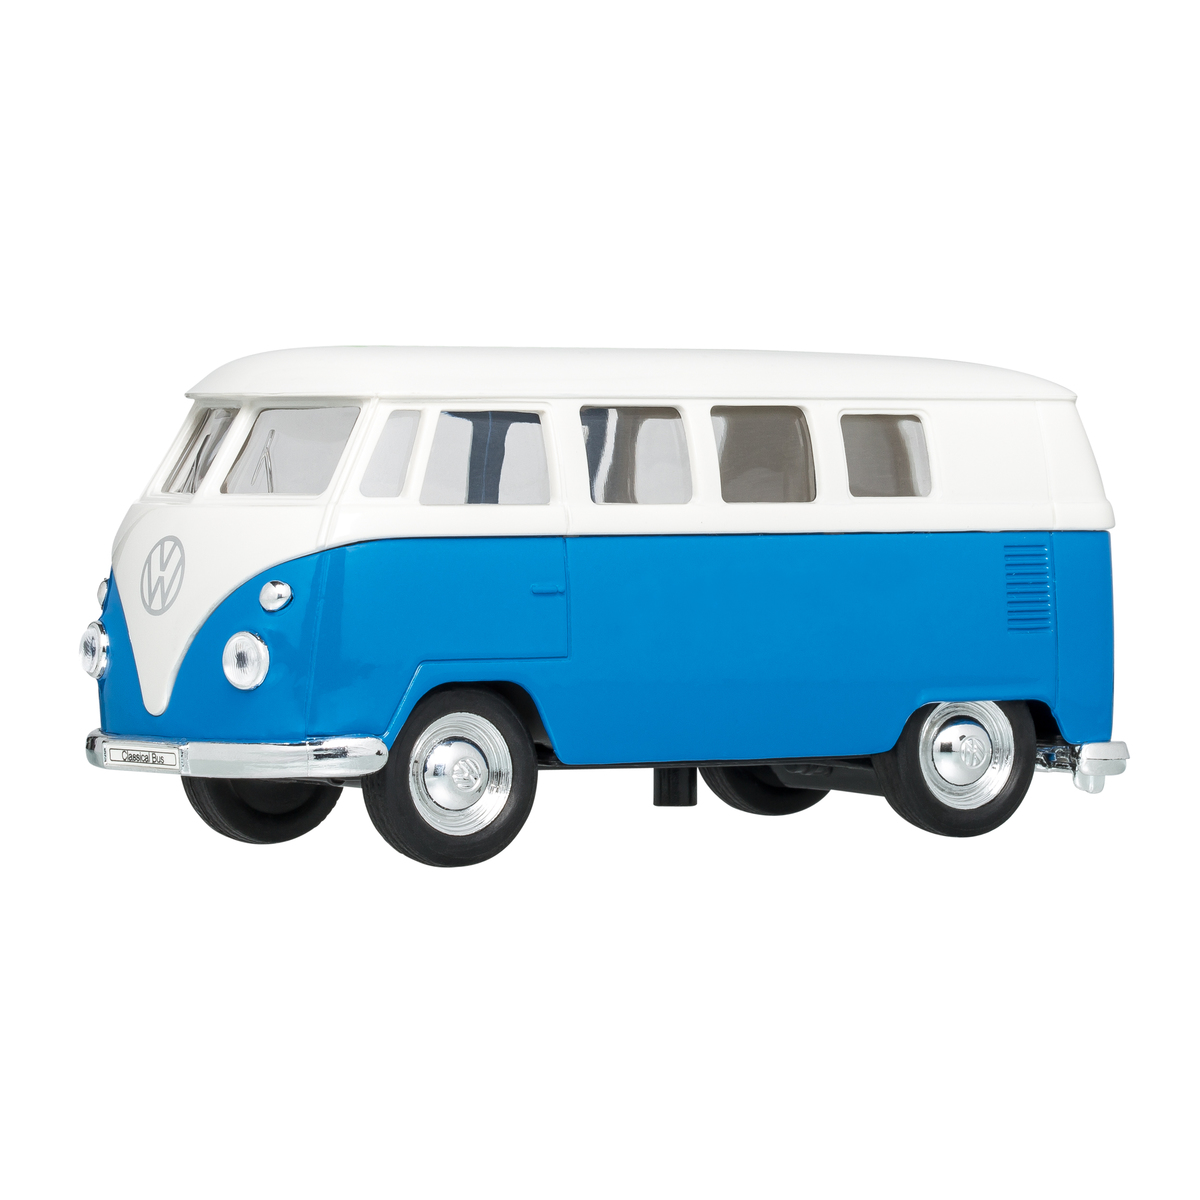 LM Modellauto VW T1 1:38 BLUE blau